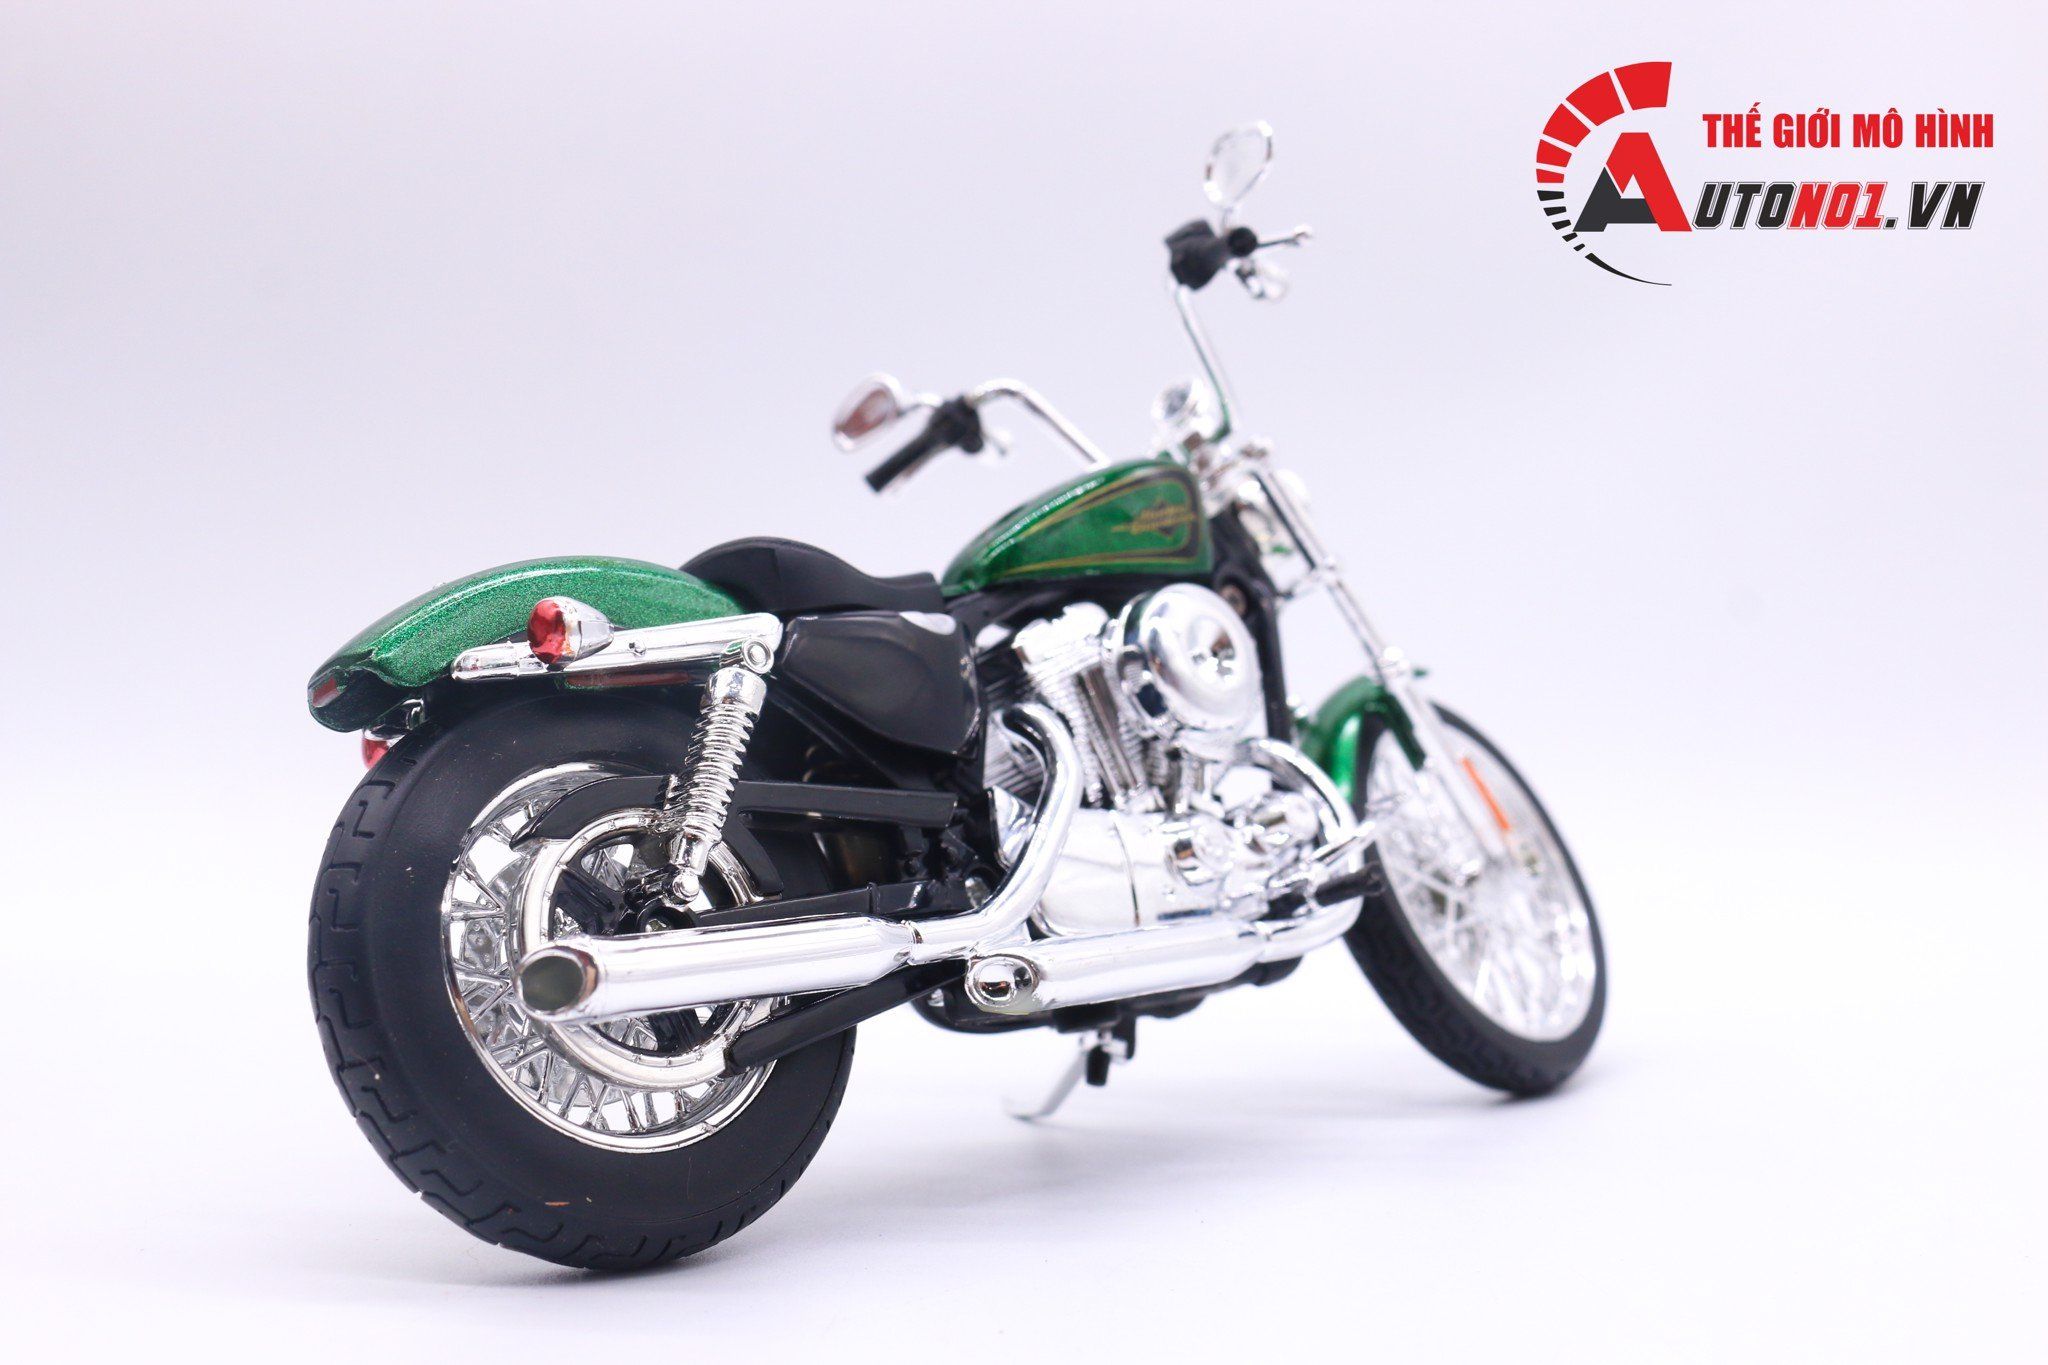  Mô hình xe Harley Davidson 2013 XL1200V Seventy-Two green 1:12 Maisto MT021 